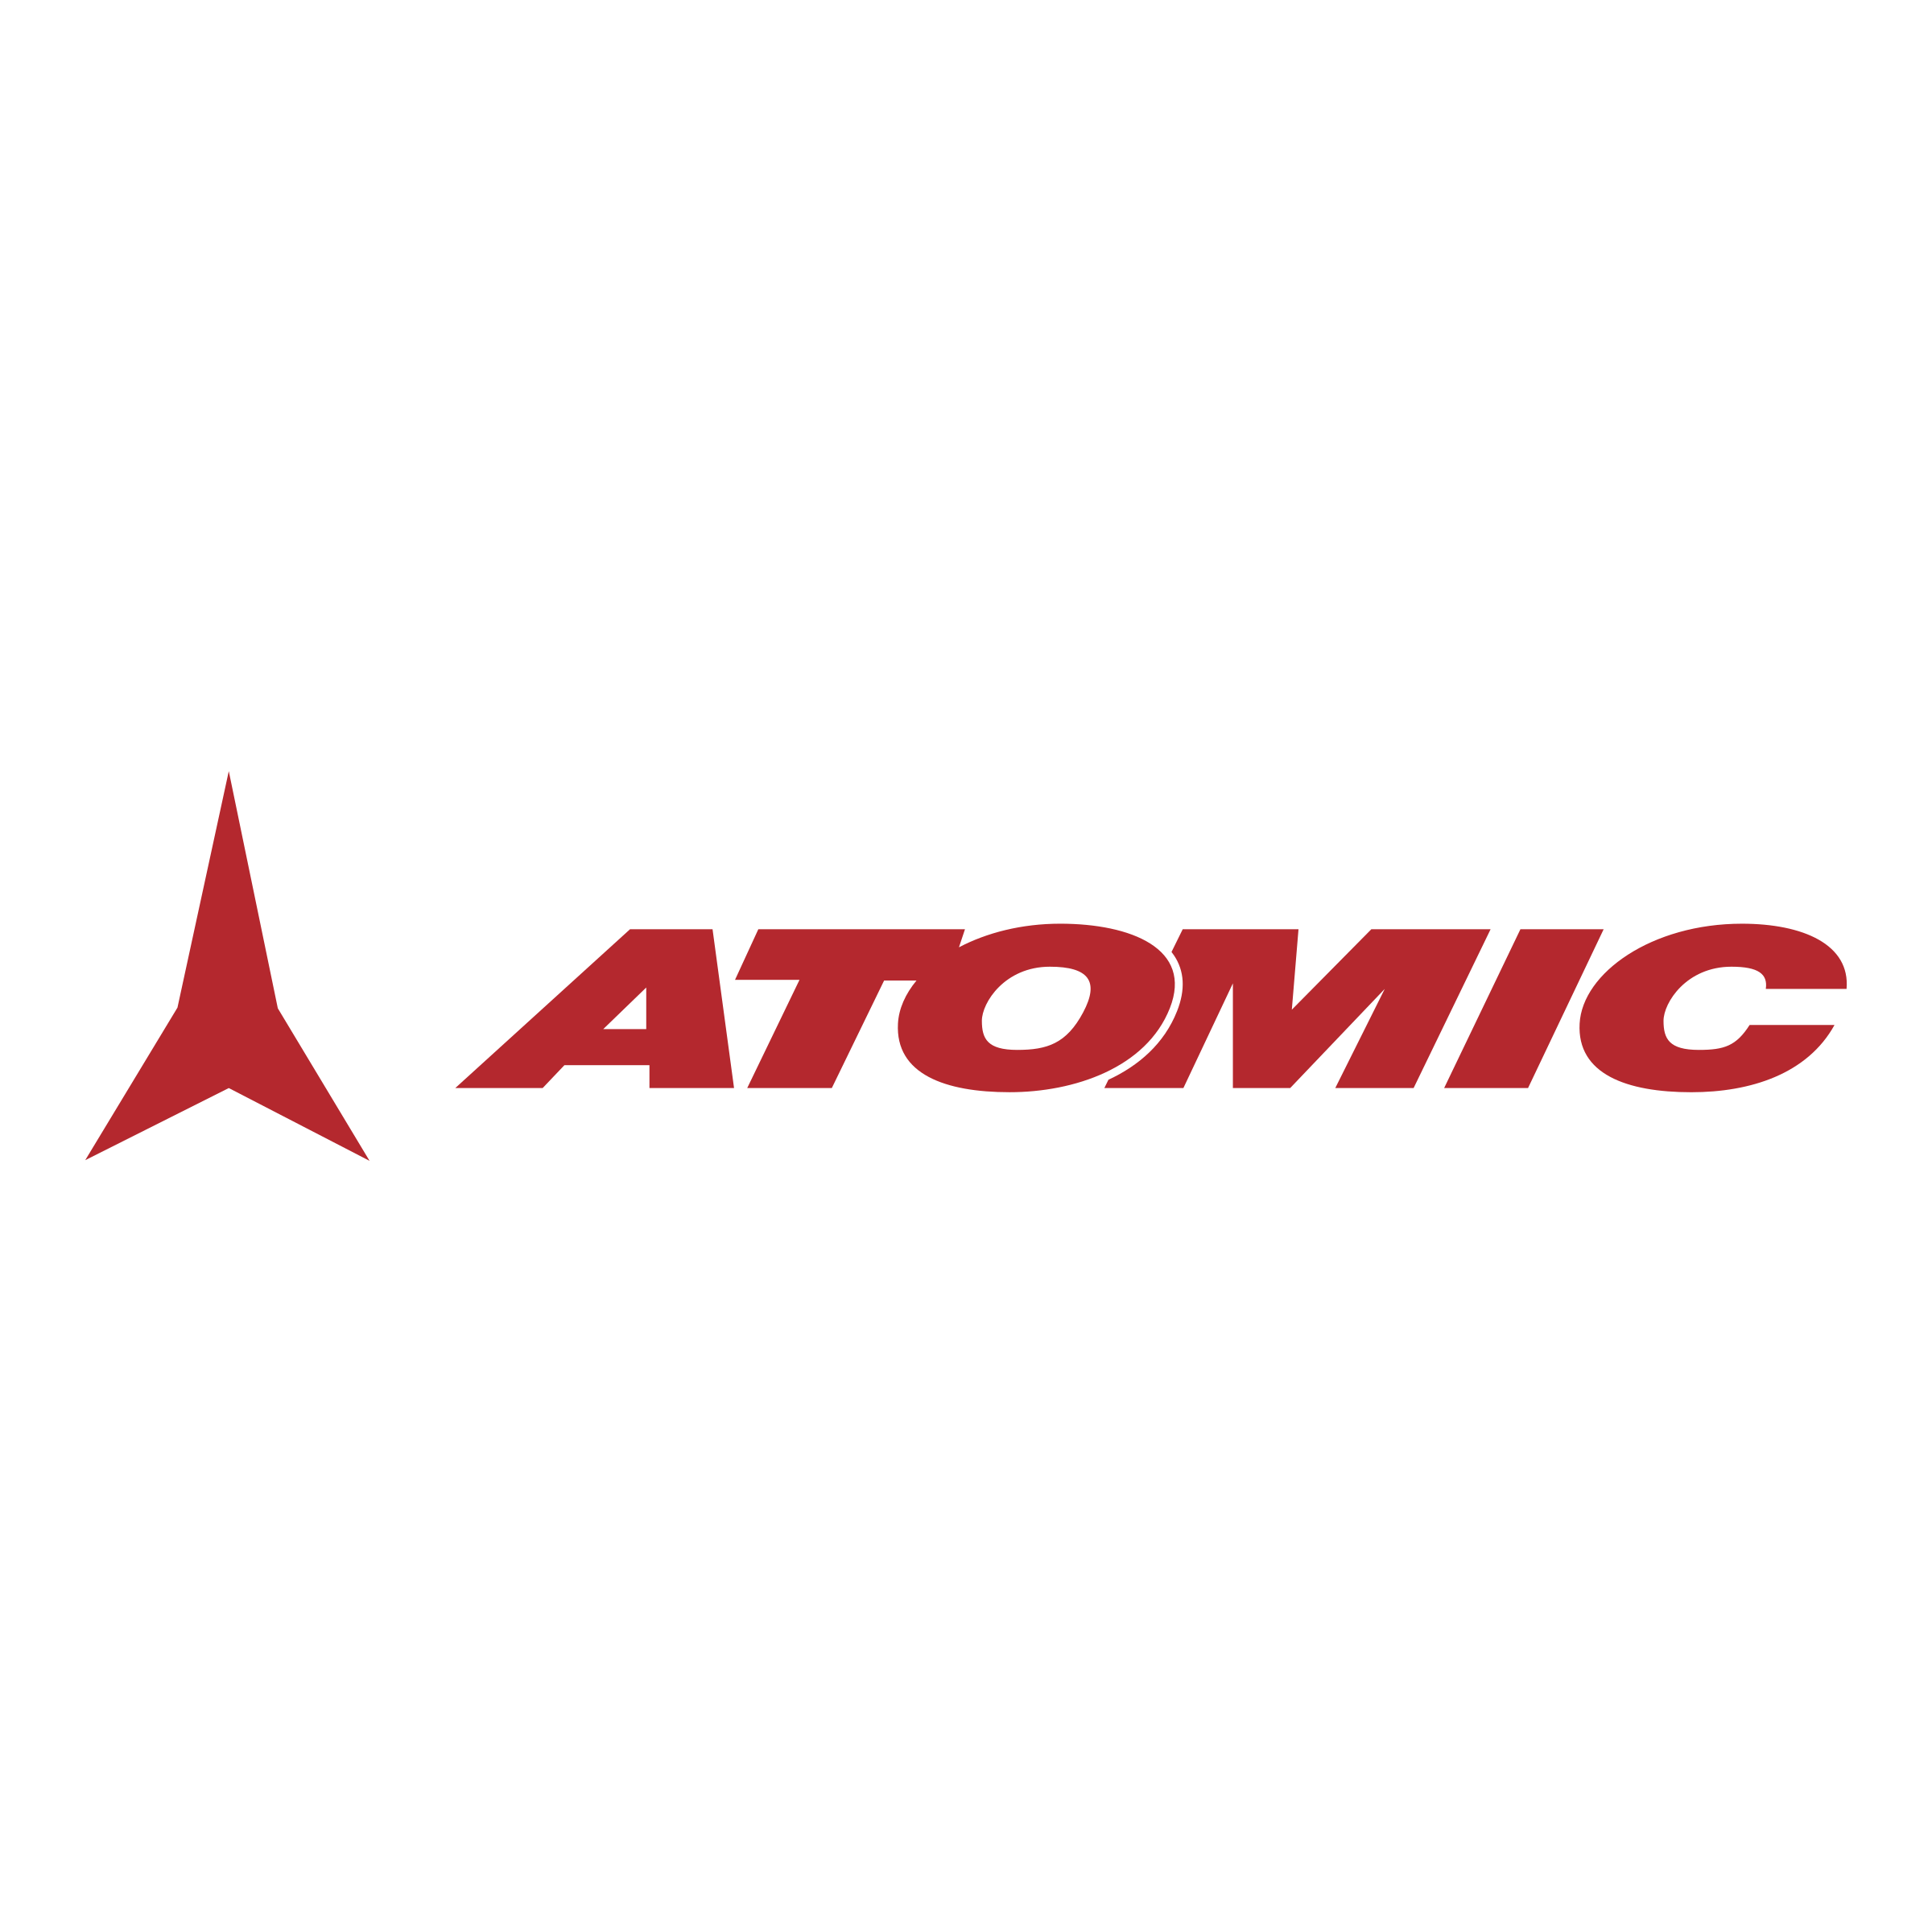 Atom Logo Png - Atomic Music 